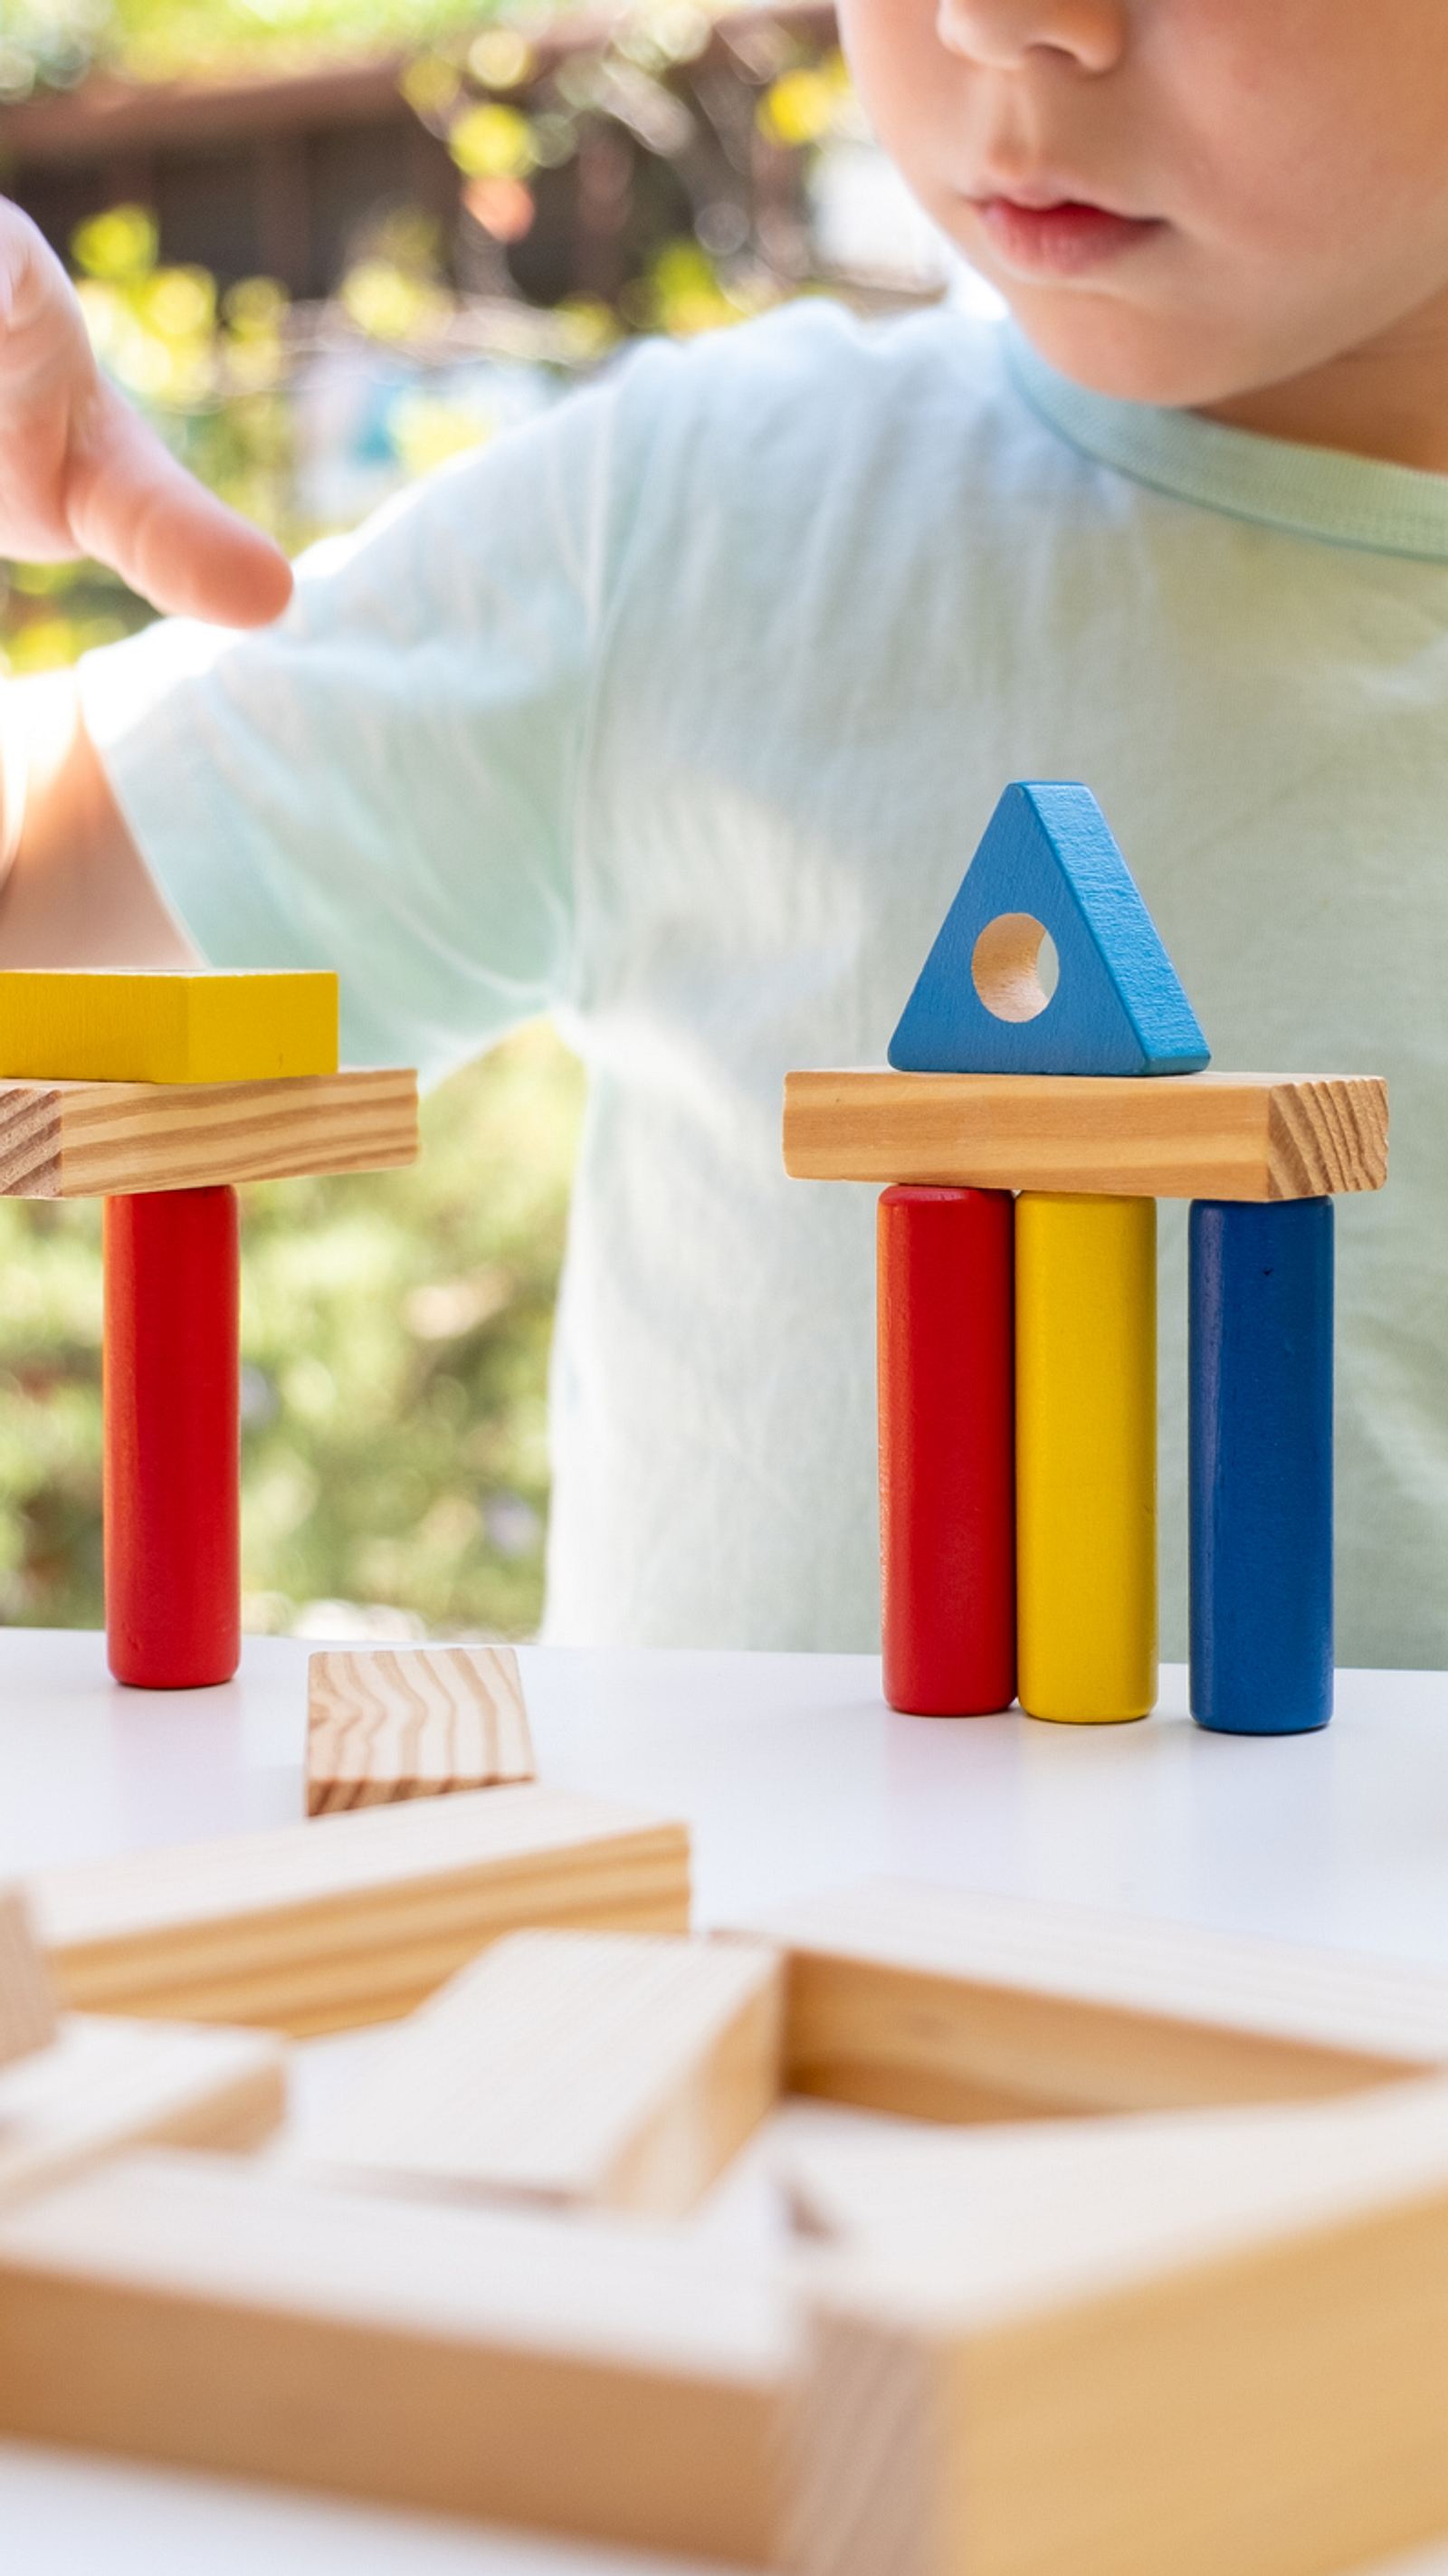 COOLJOY Magnetisches Angelspiel Montessori Spielzeug ab 2 Jahre